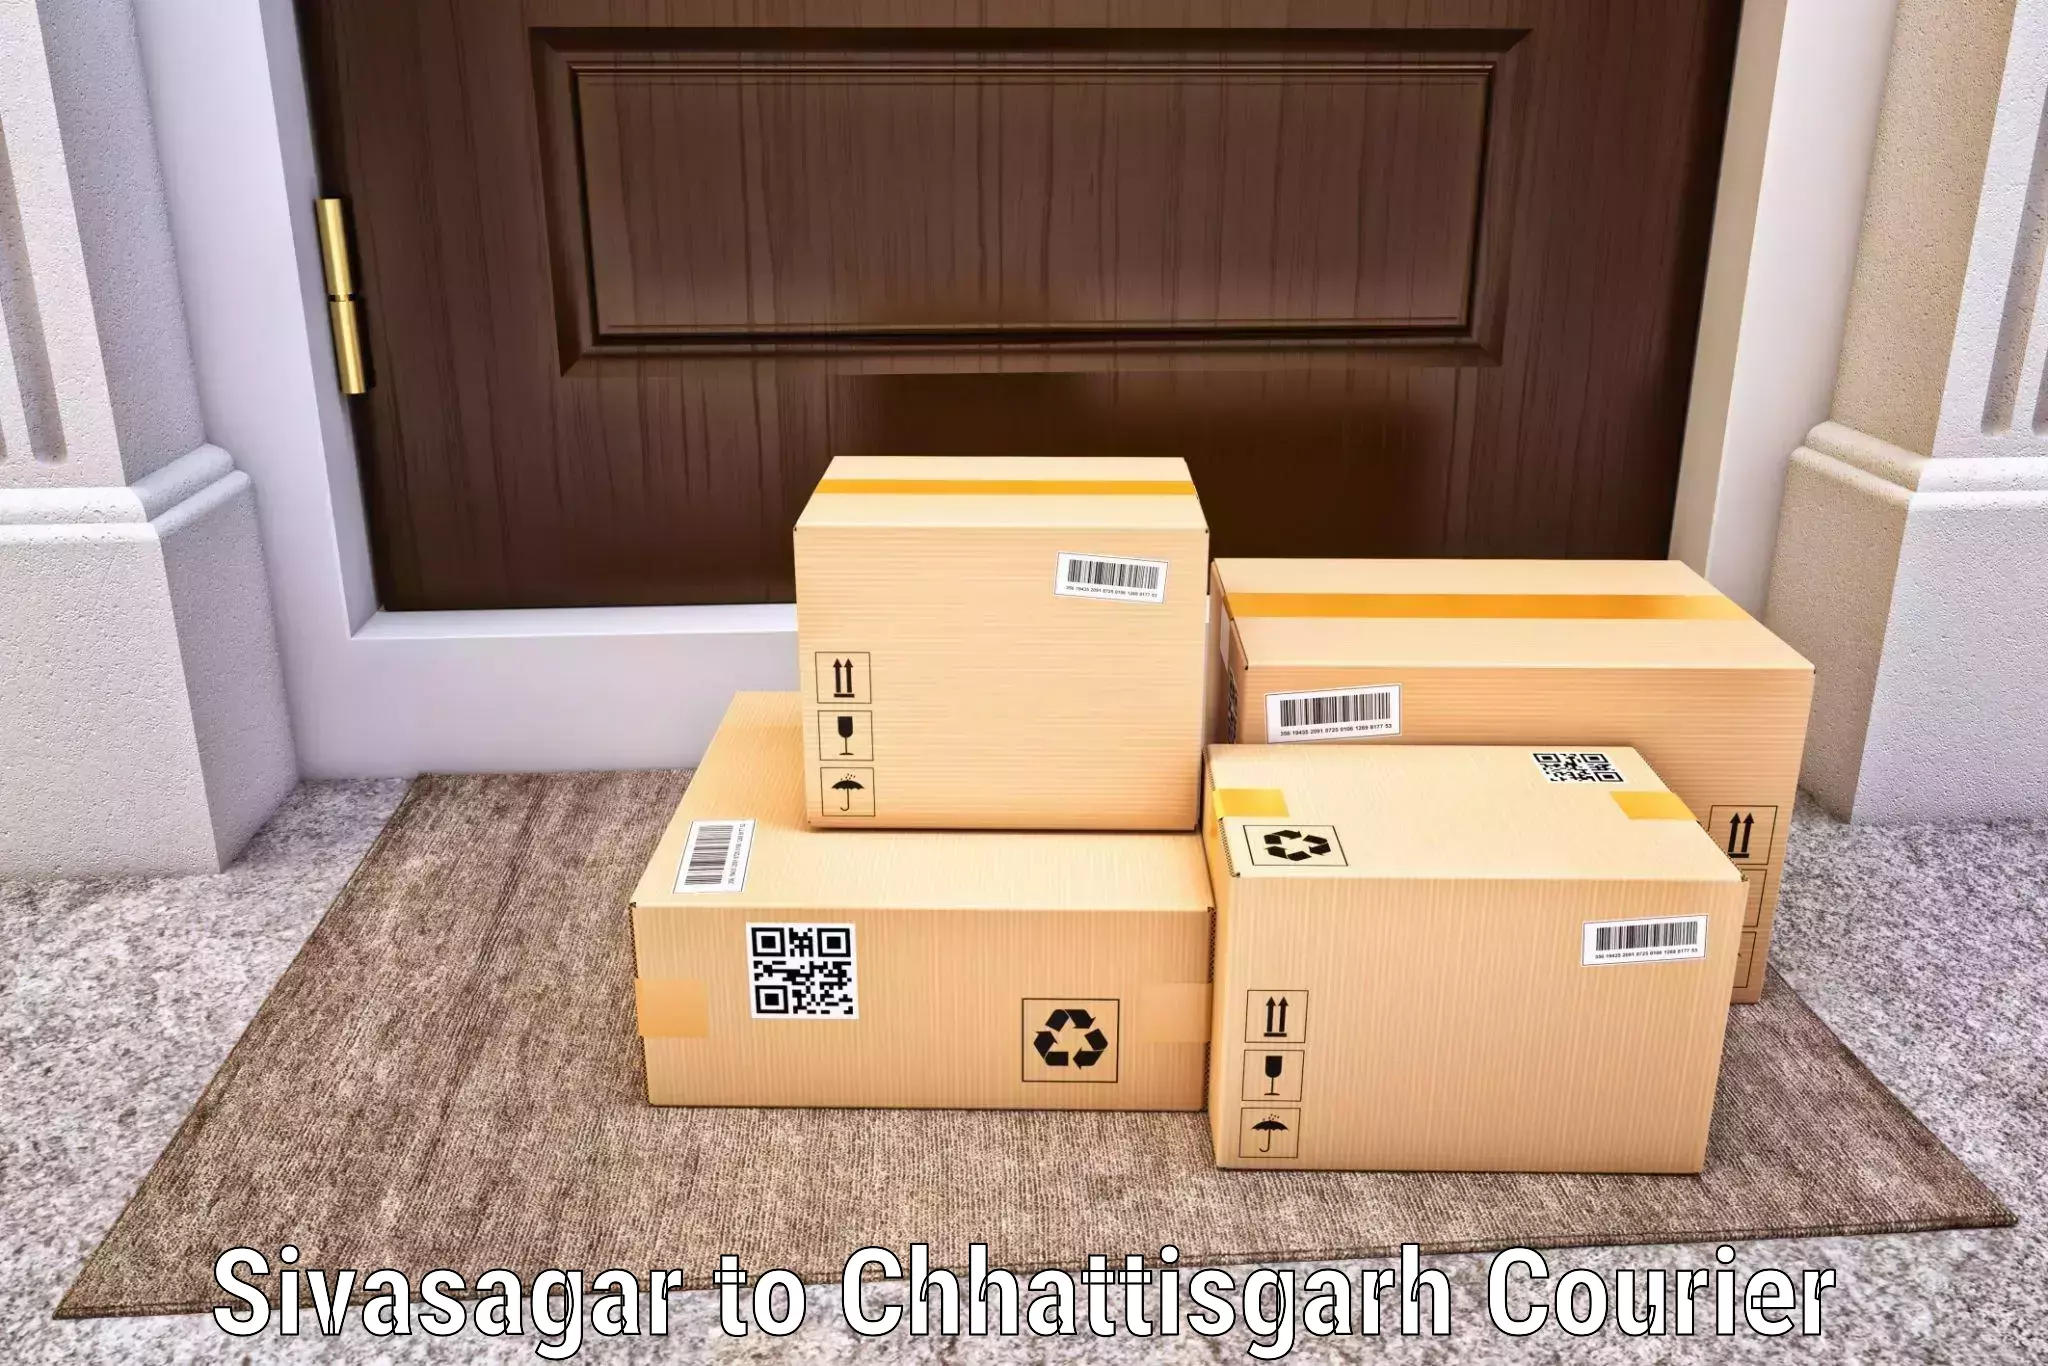 Corporate courier solutions Sivasagar to Shivrinarayan